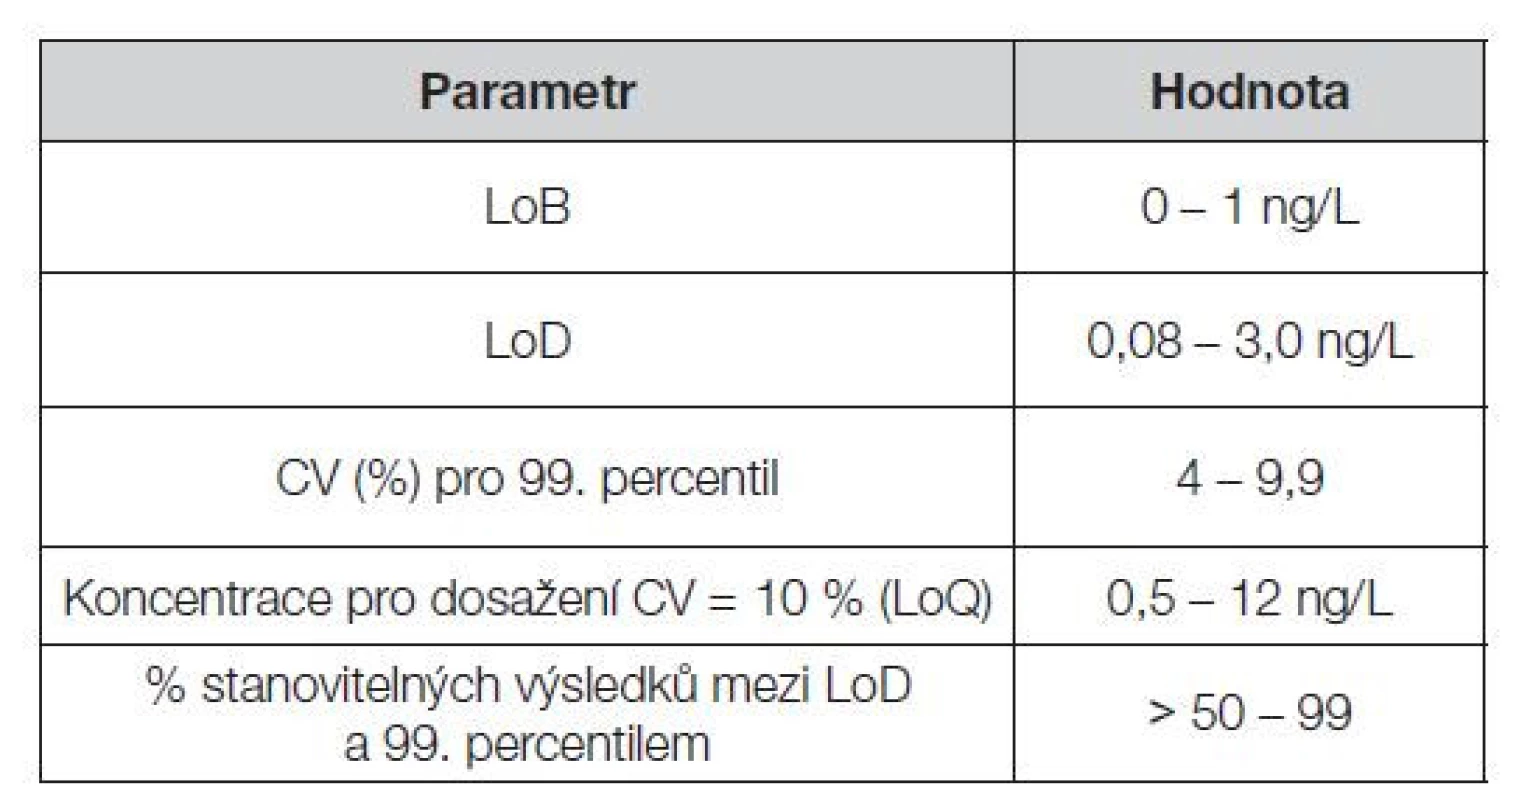 Intervaly hodnot LoB, LoD, LoQ, preciznosti a počtu
kvantifikovatelných výsledků nad LoD